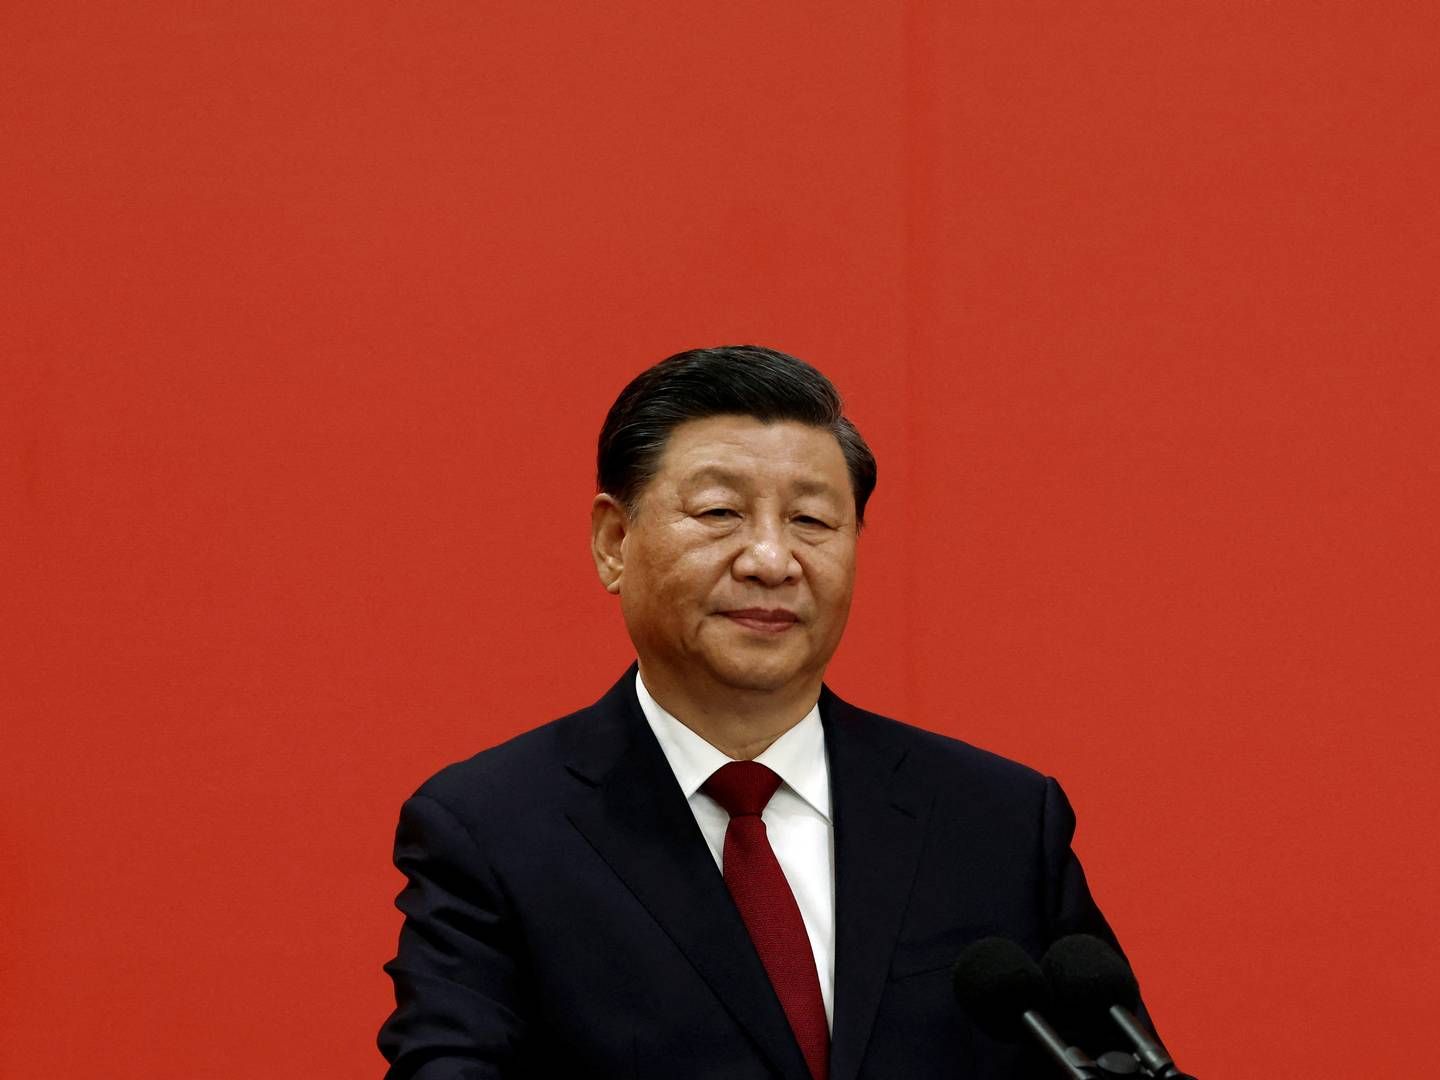 Kinas præsident Xi Jinping har ifølge avisen The Guardian bedt den kinesiske hær om at forberede sig på krig. Det tolker mediet som sabelraslen overfor Taiwan. | Foto: Tingshu Wang/Reuters/Ritzau Scanpix